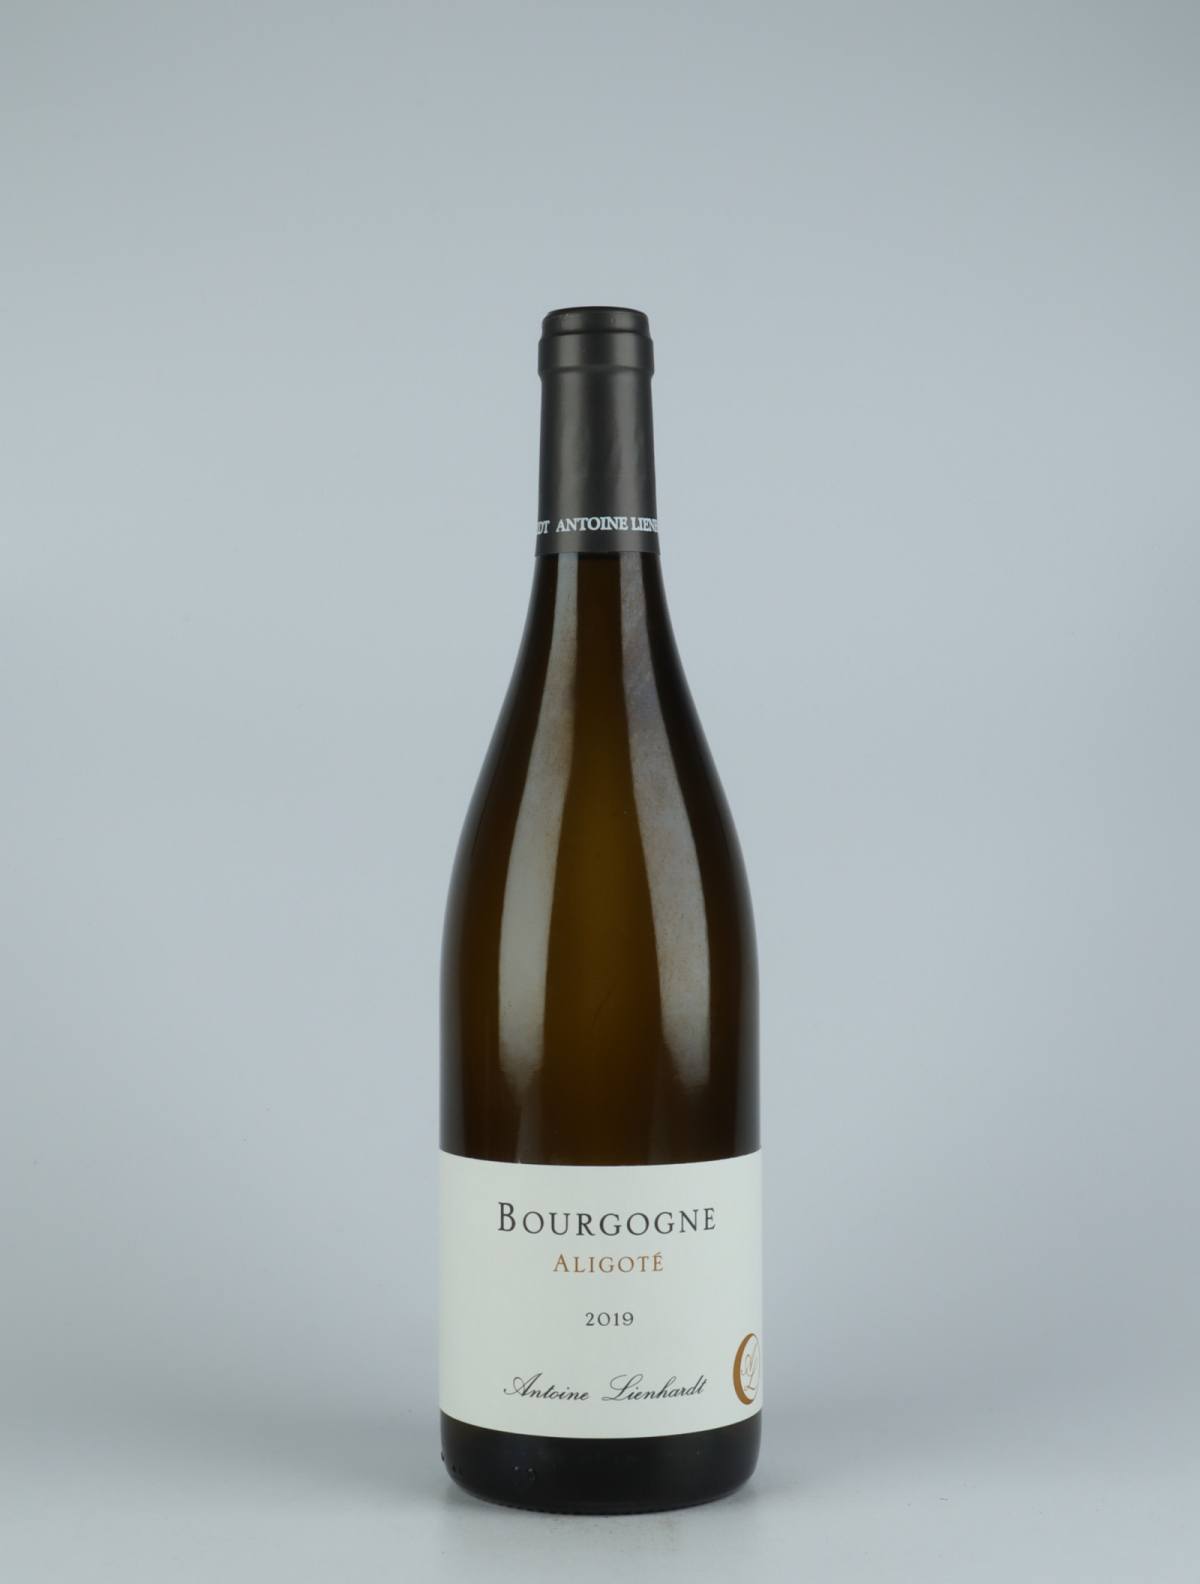 En flaske 2019 Bourgogne Aligoté Hvidvin fra Antoine Lienhardt, Bourgogne i Frankrig